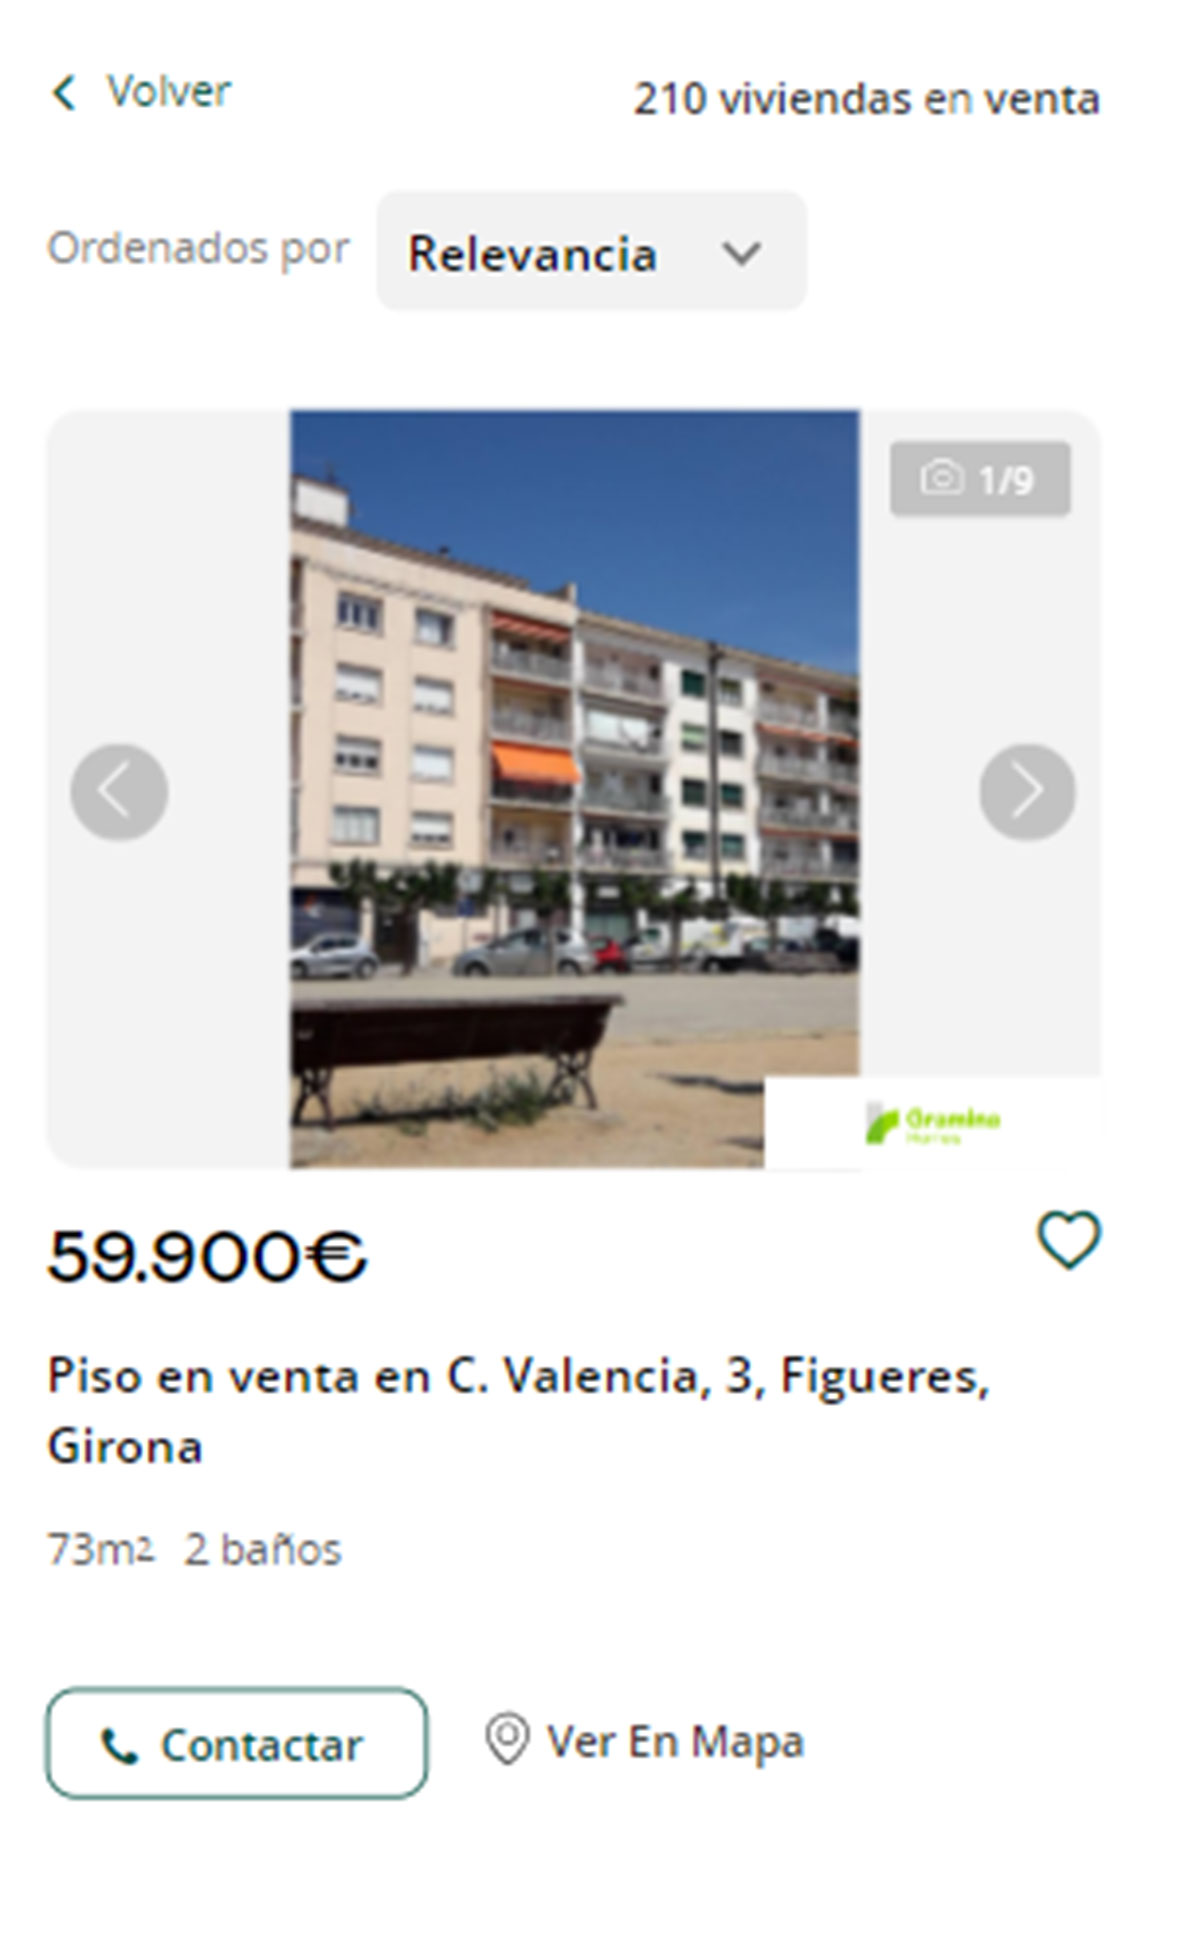 Piso en Girona por 59.000 euros